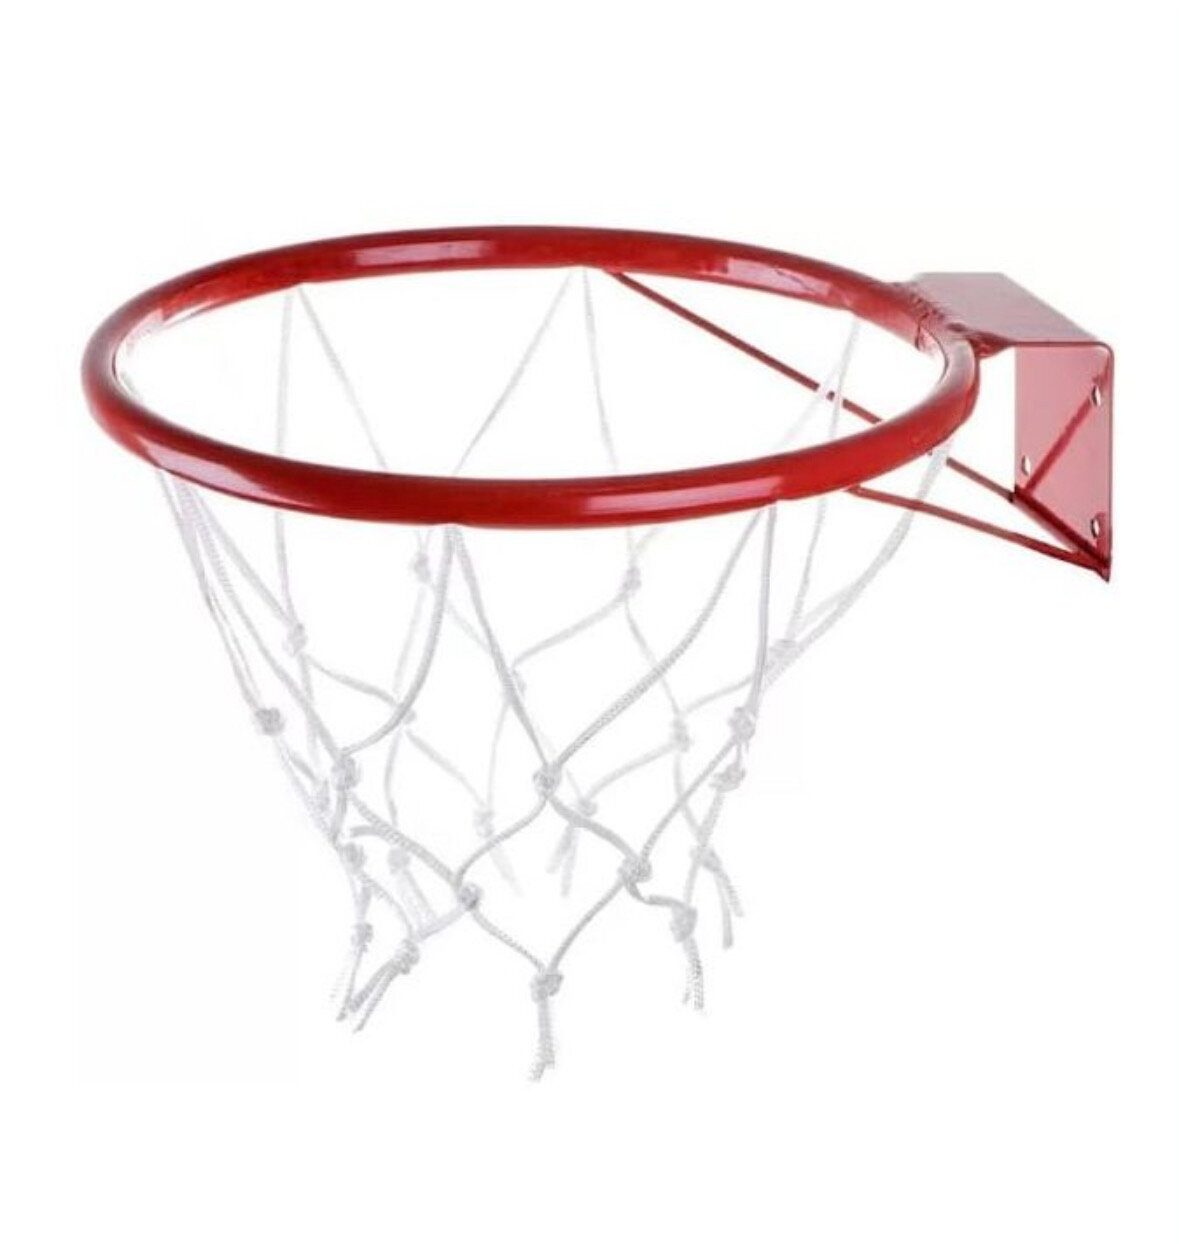 Кольцо баскетбольное №5 с сеткой, усиленное, d380 мм.